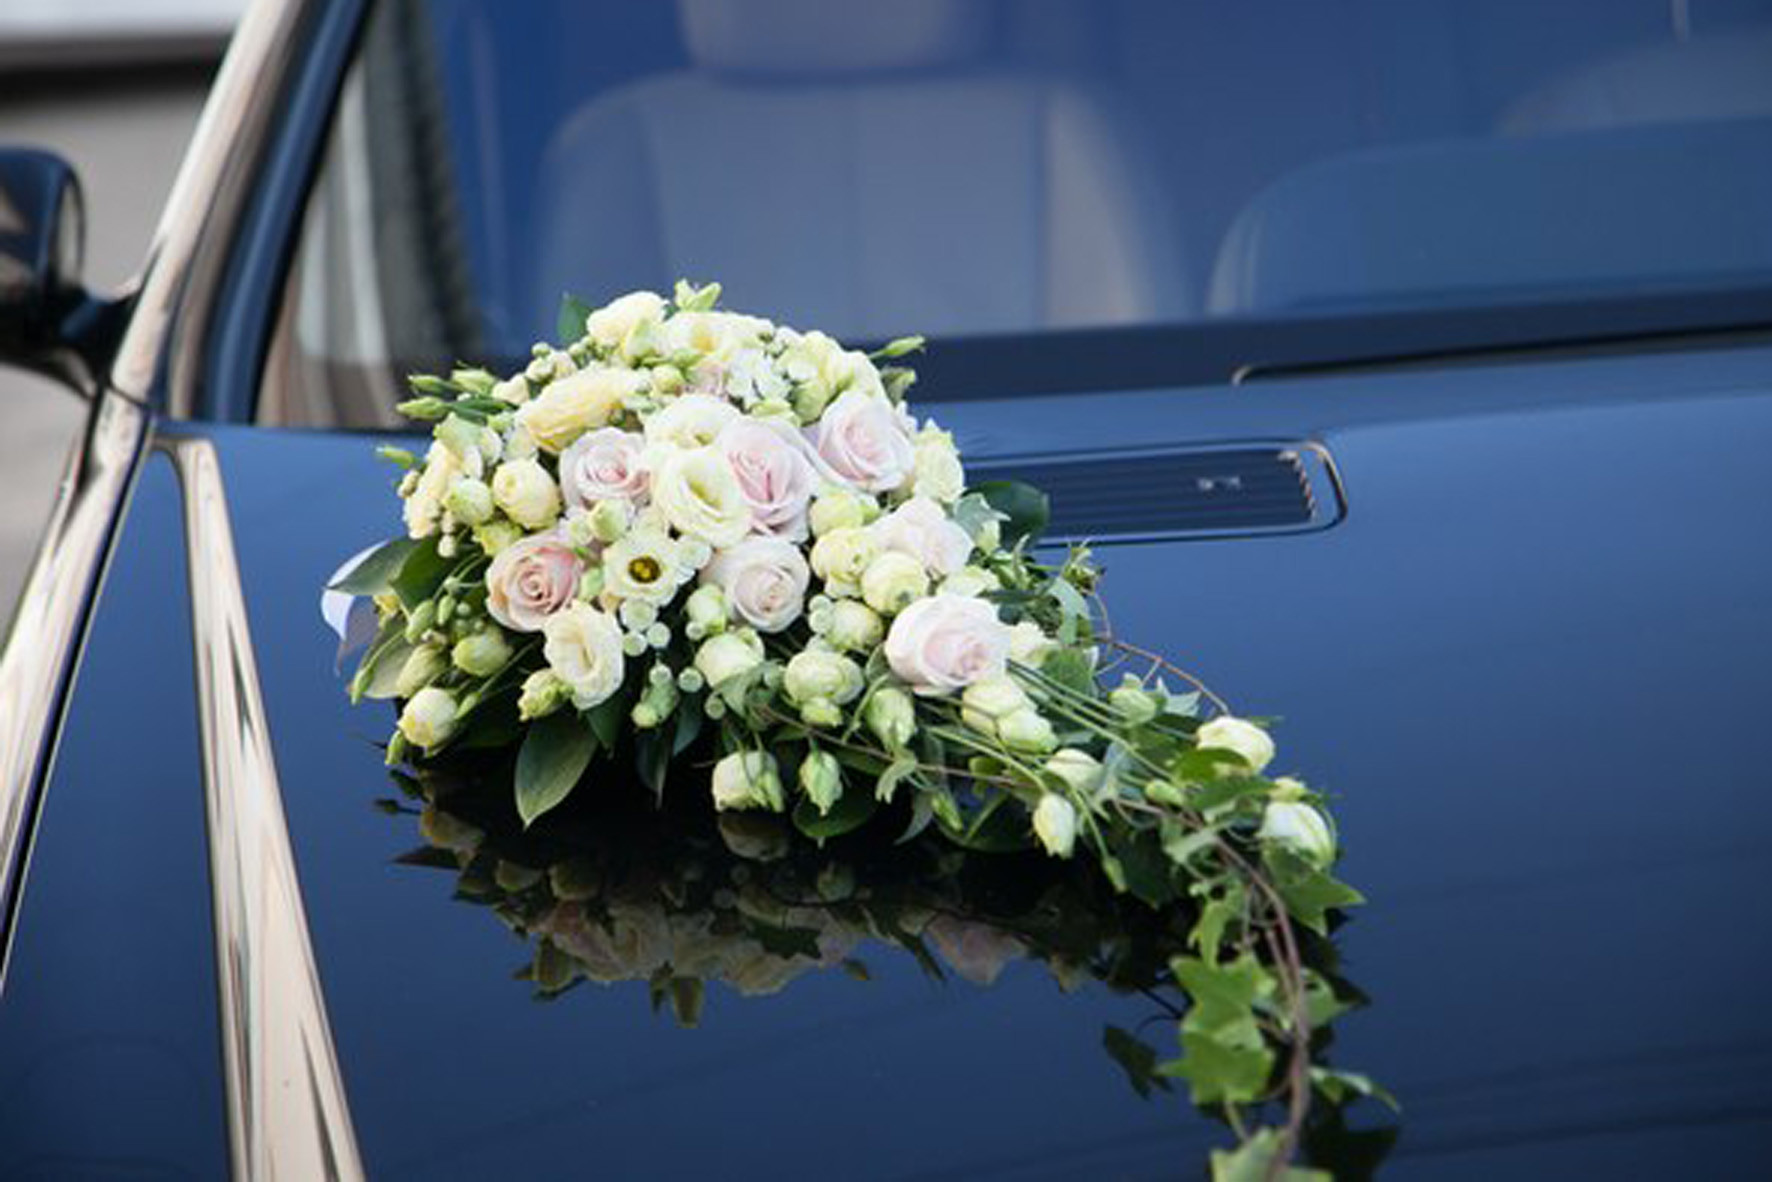 Композиция на безопасном креплении на капот авто для свадебного кортежа